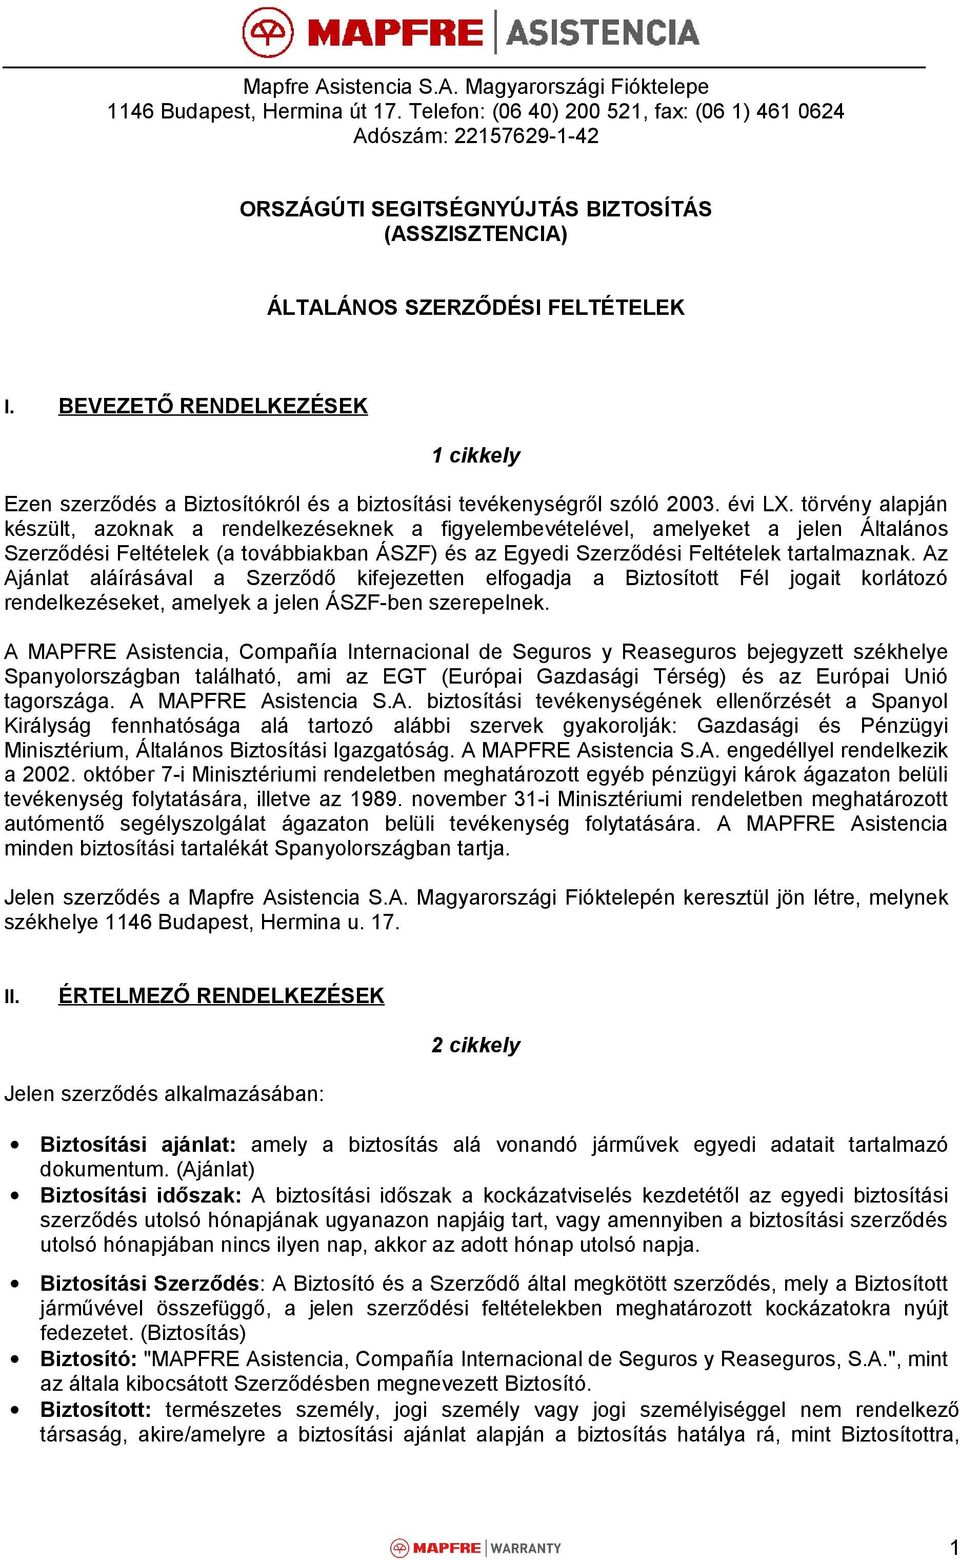 Mapfre Asistencia S.A. Magyarországi Fióktelepe 1146 Budapest, Hermina út  17. Telefon: (06 40) , fax: (06 1) Adószám: - PDF Ingyenes letöltés